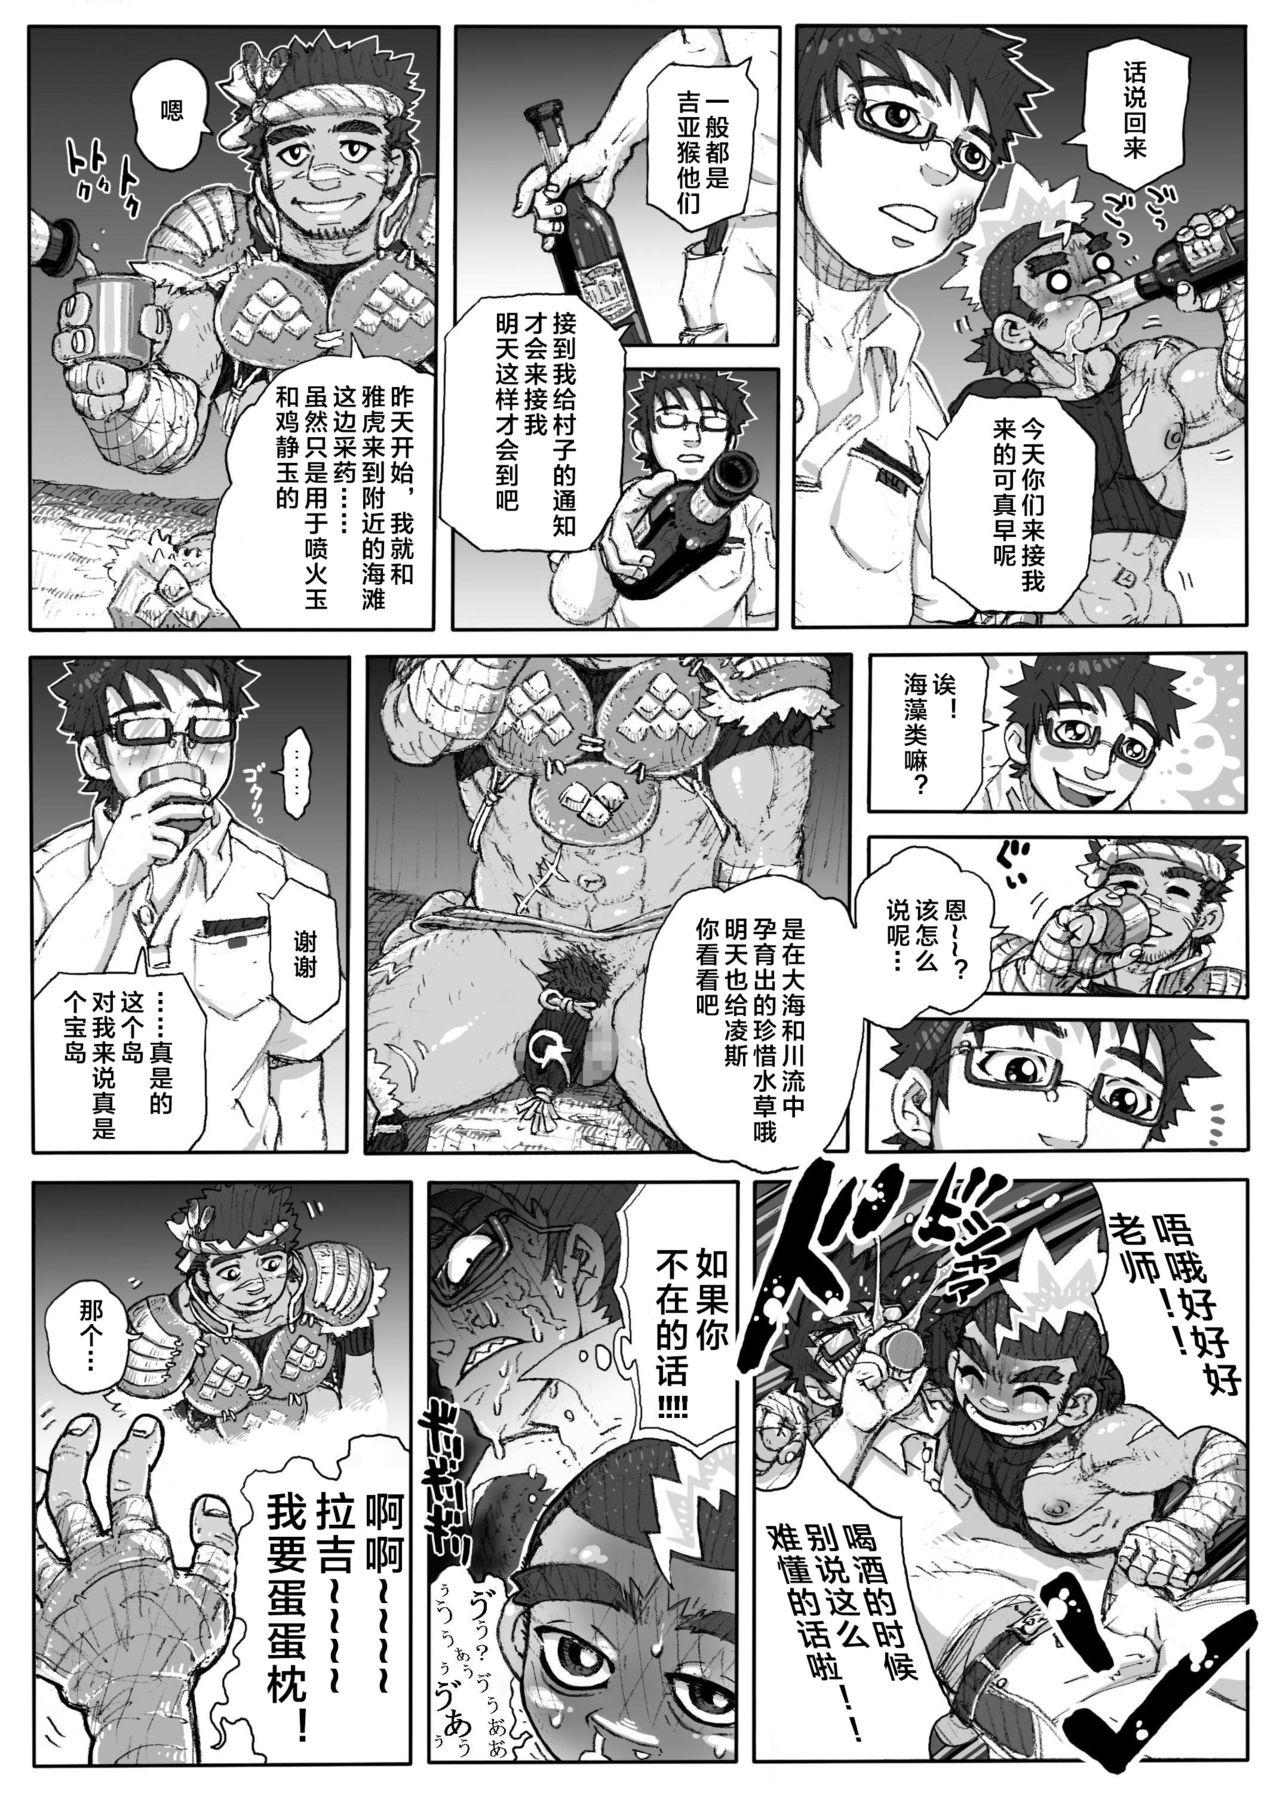 Romance Hepoe no Kuni kara 1 - Mizu no Gakusha Sensei, Hi no Buzoku no Saru ni Hazukashimerareru no Maki Banging - Page 11